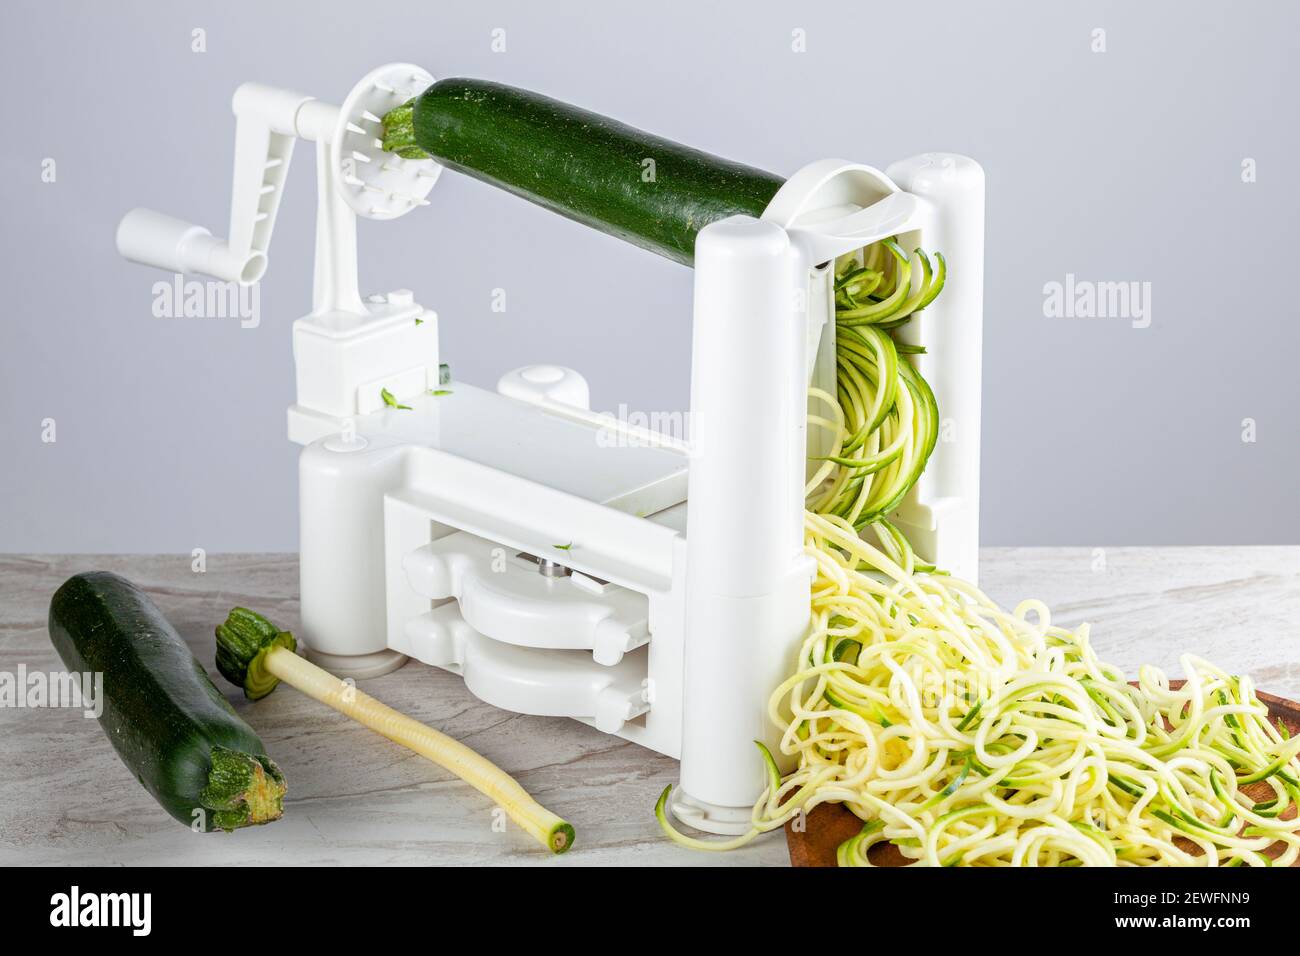 Nahaufnahme isoliertes Bild eines handbetriebenen Gemüseschneidemaschine aus Kunststoff, Spiralizer auf Küchenarbeitsplatten. Bild zeigt Zucchini Nudeln gemacht vorbei Stockfoto